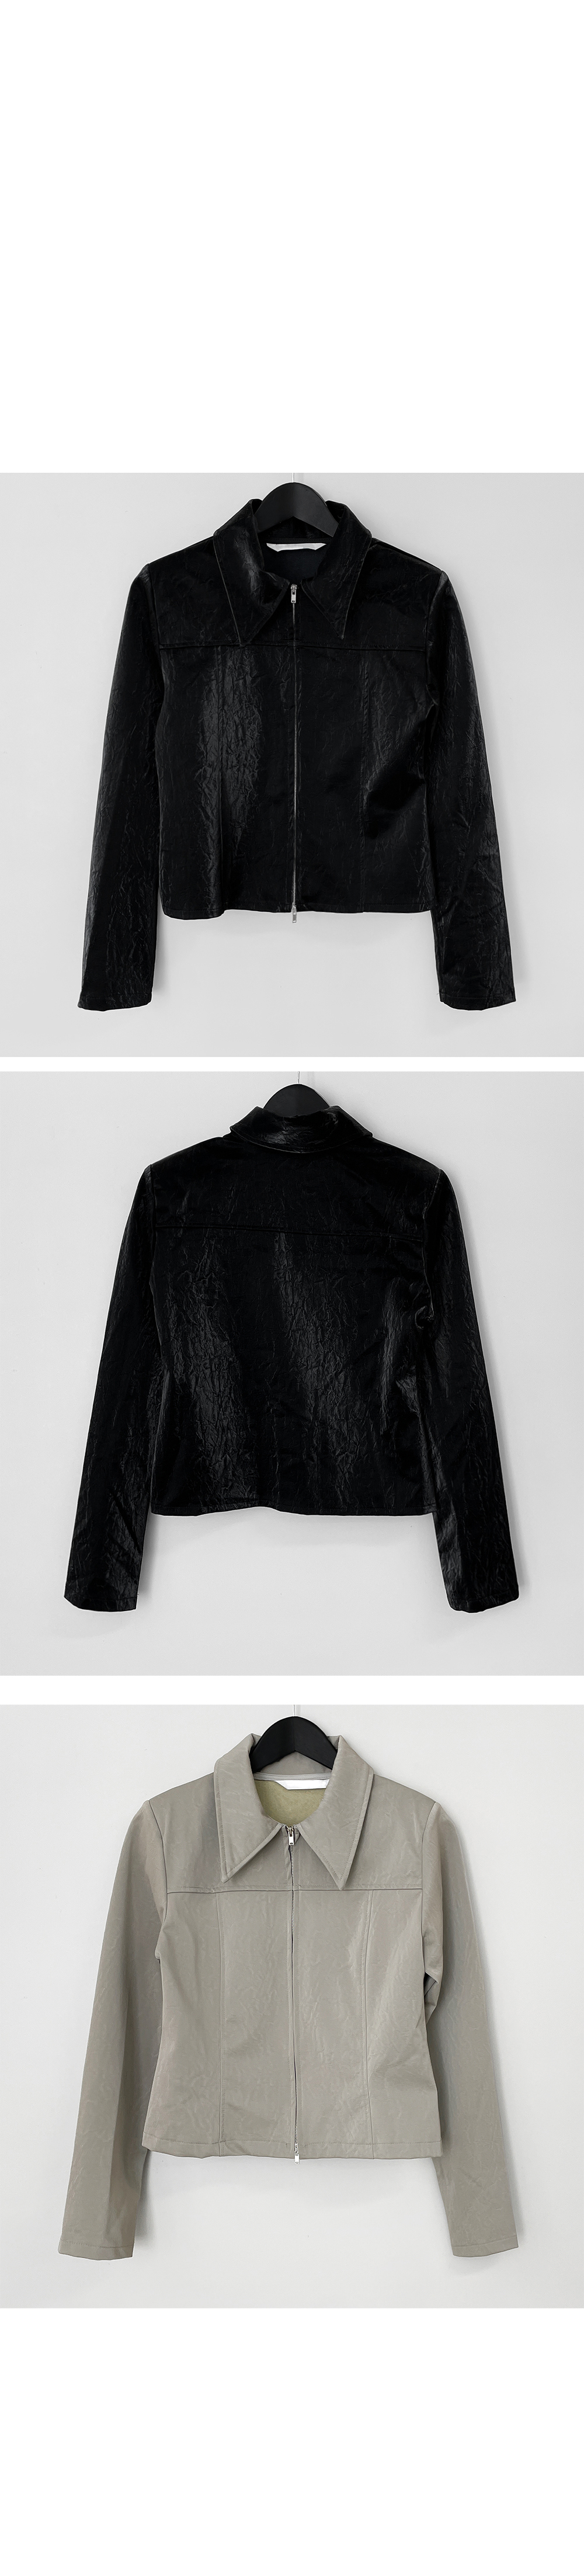 jacket model image-S1L9